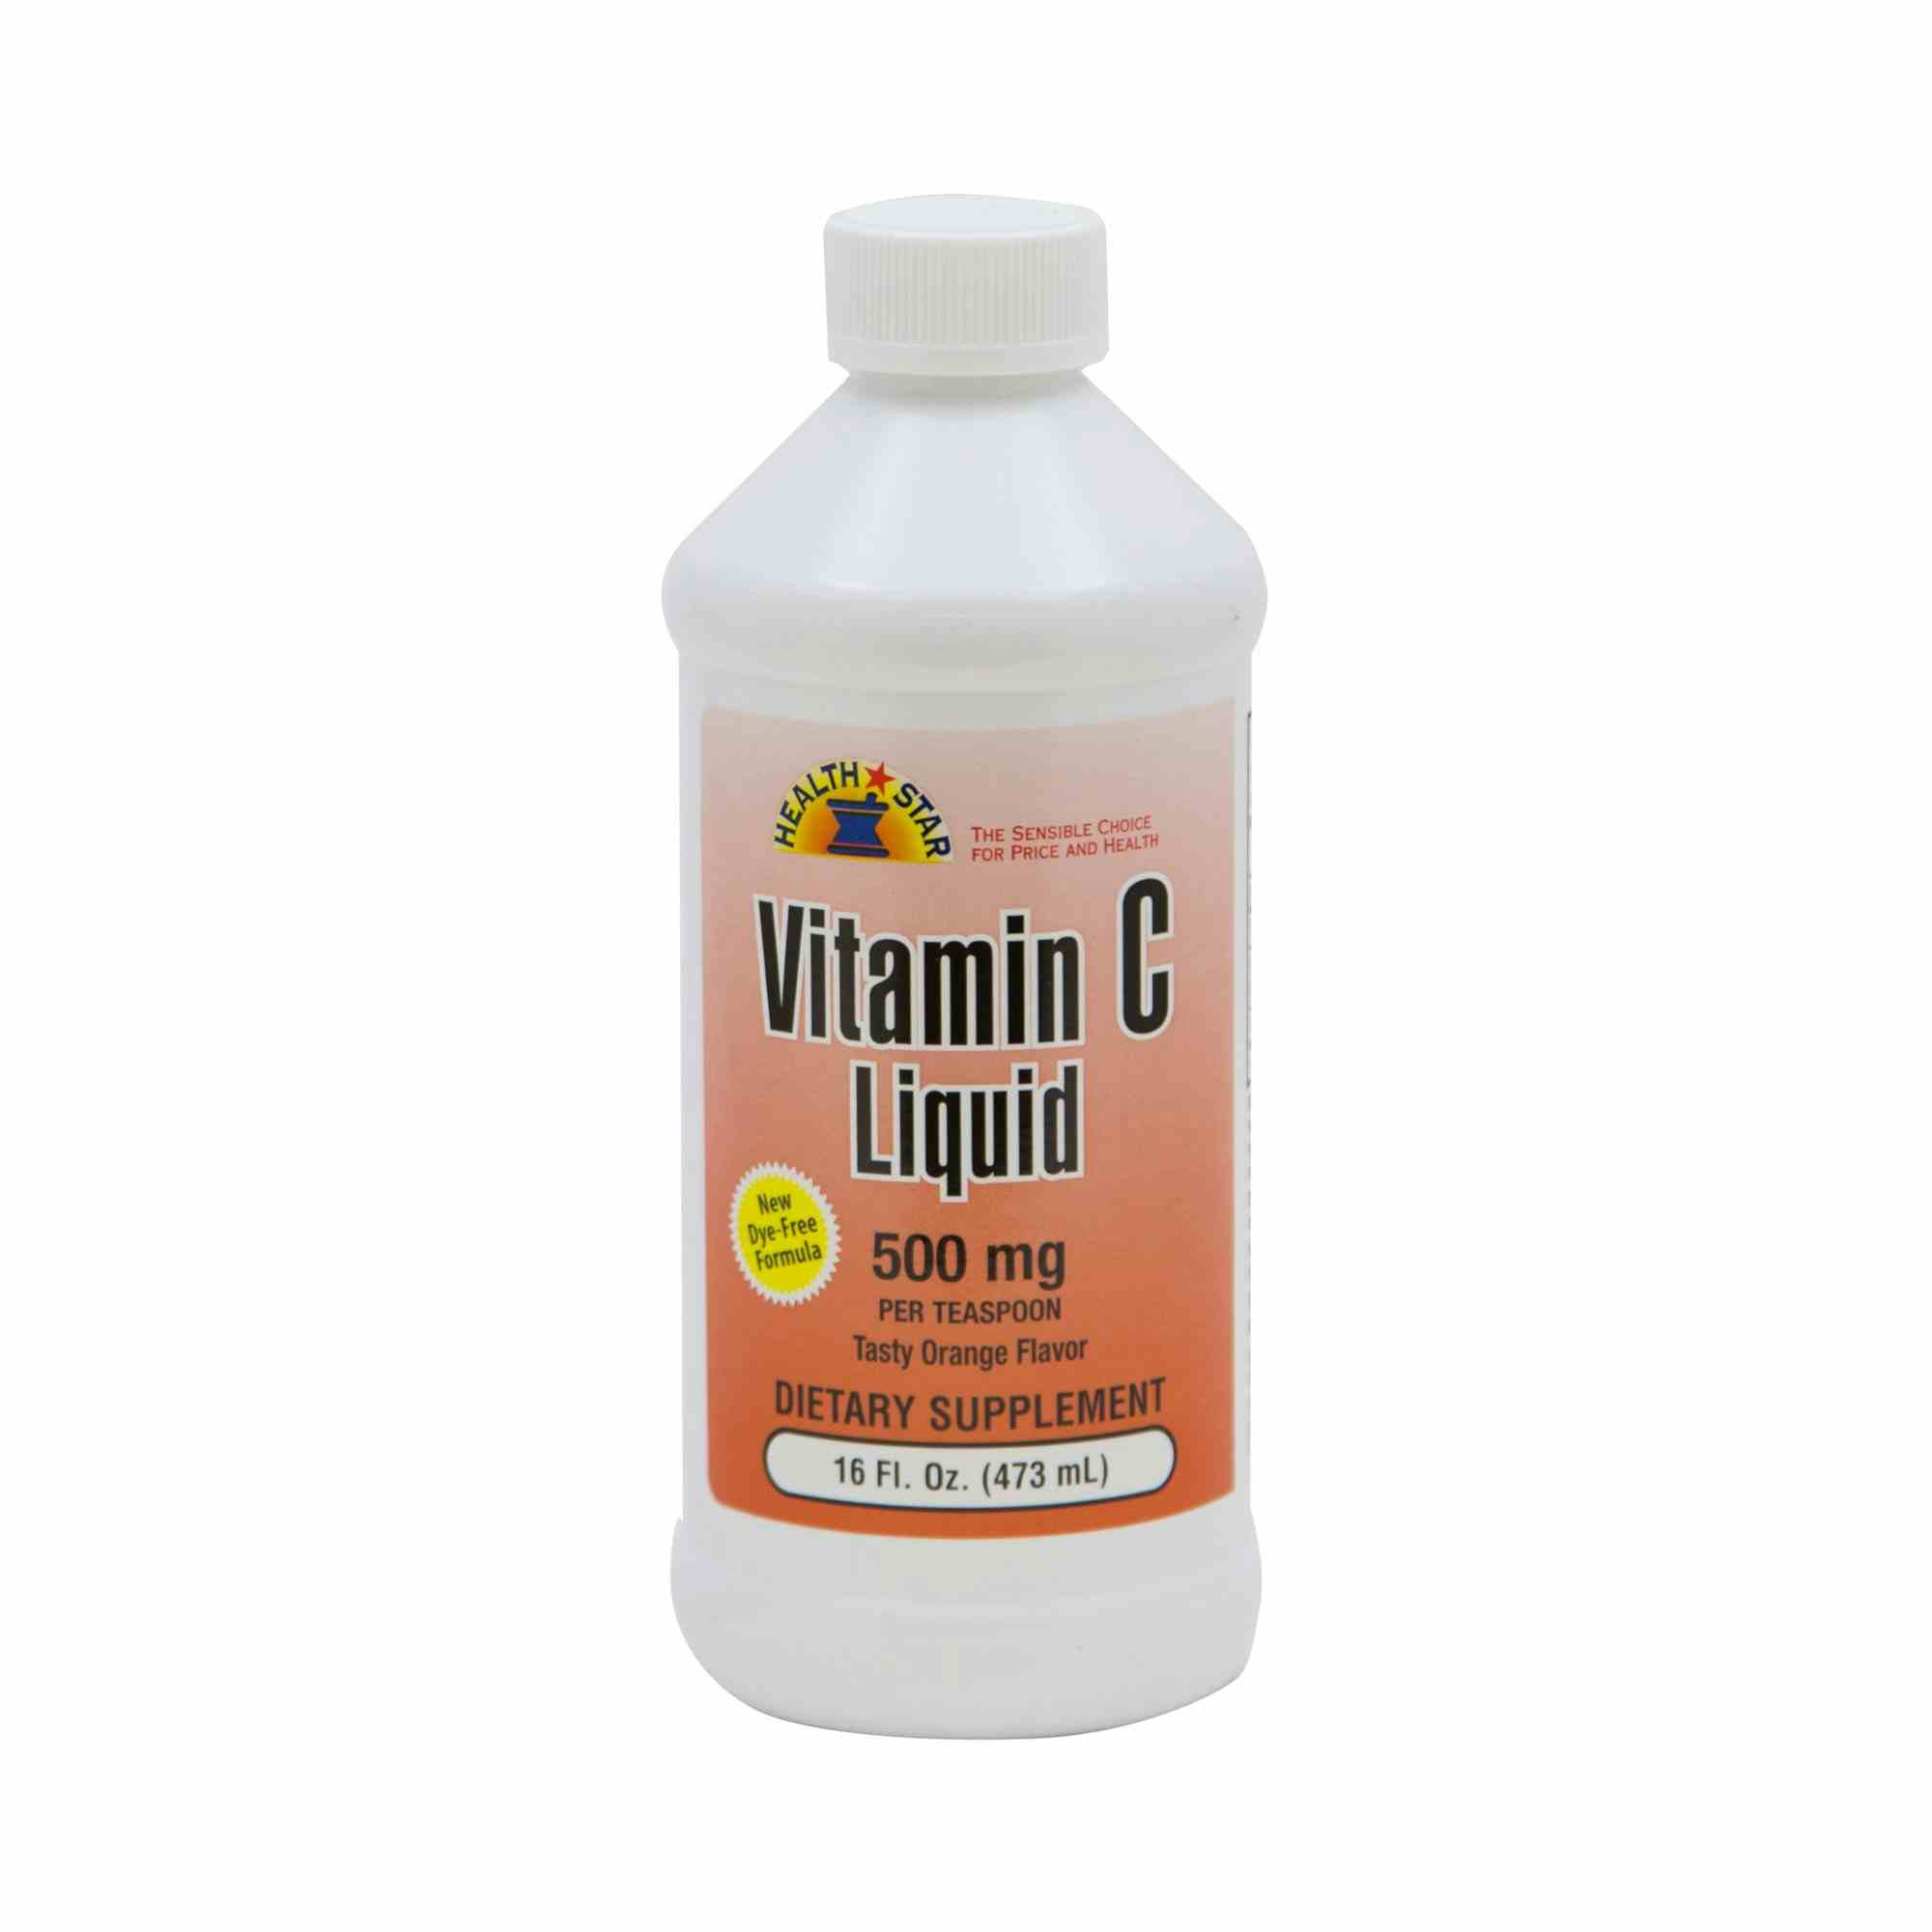 Geri-Care Ascorbic Acid Vitamin C Supplement 500 mg, Liquid, Q842-16-GCP, 500 mg - 1 Bottle